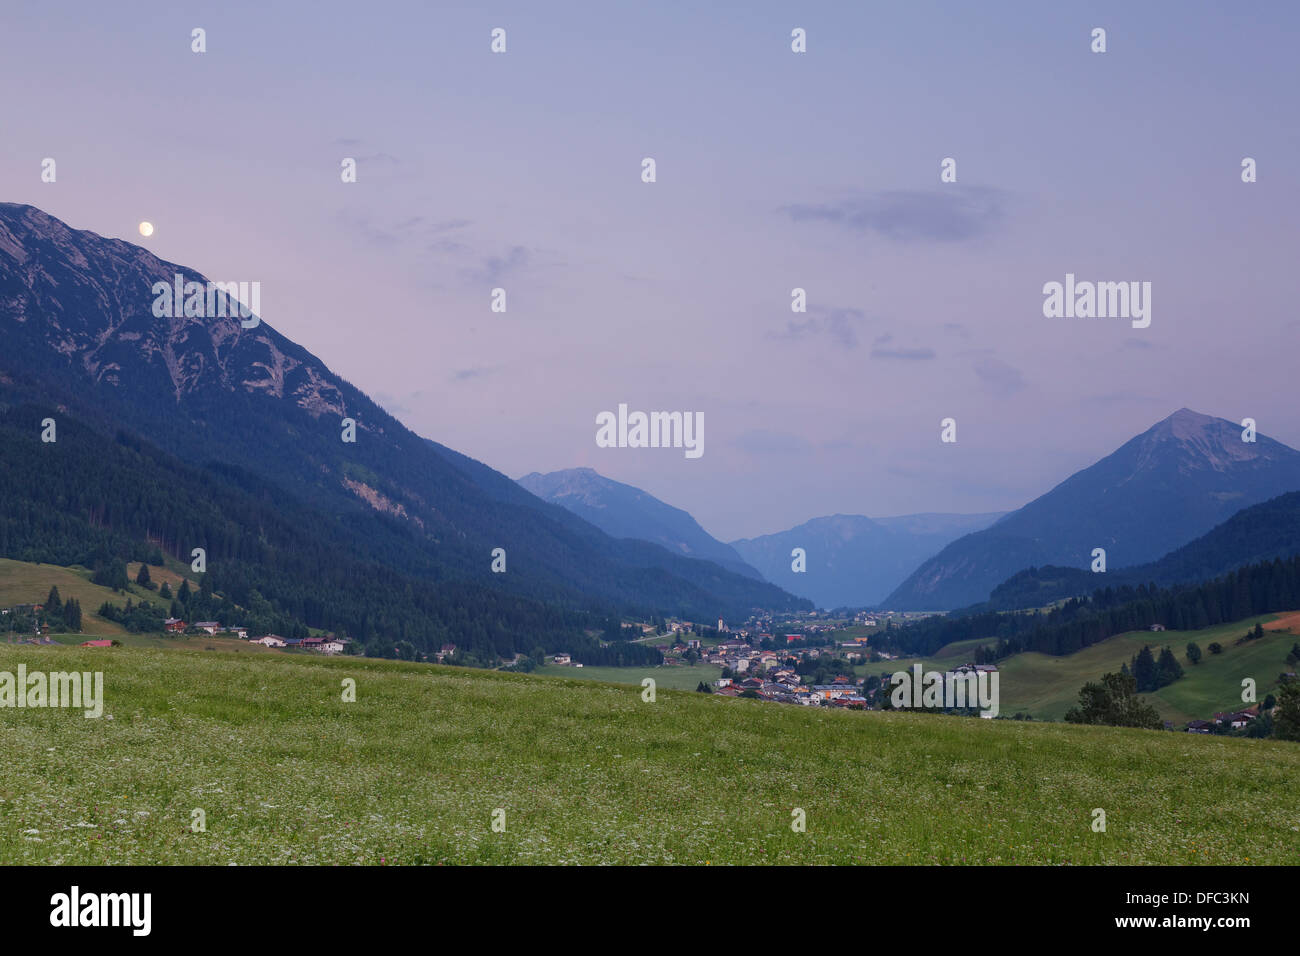 Austria, Tyrol, Schwaz, View to Achenkirch Stock Photo